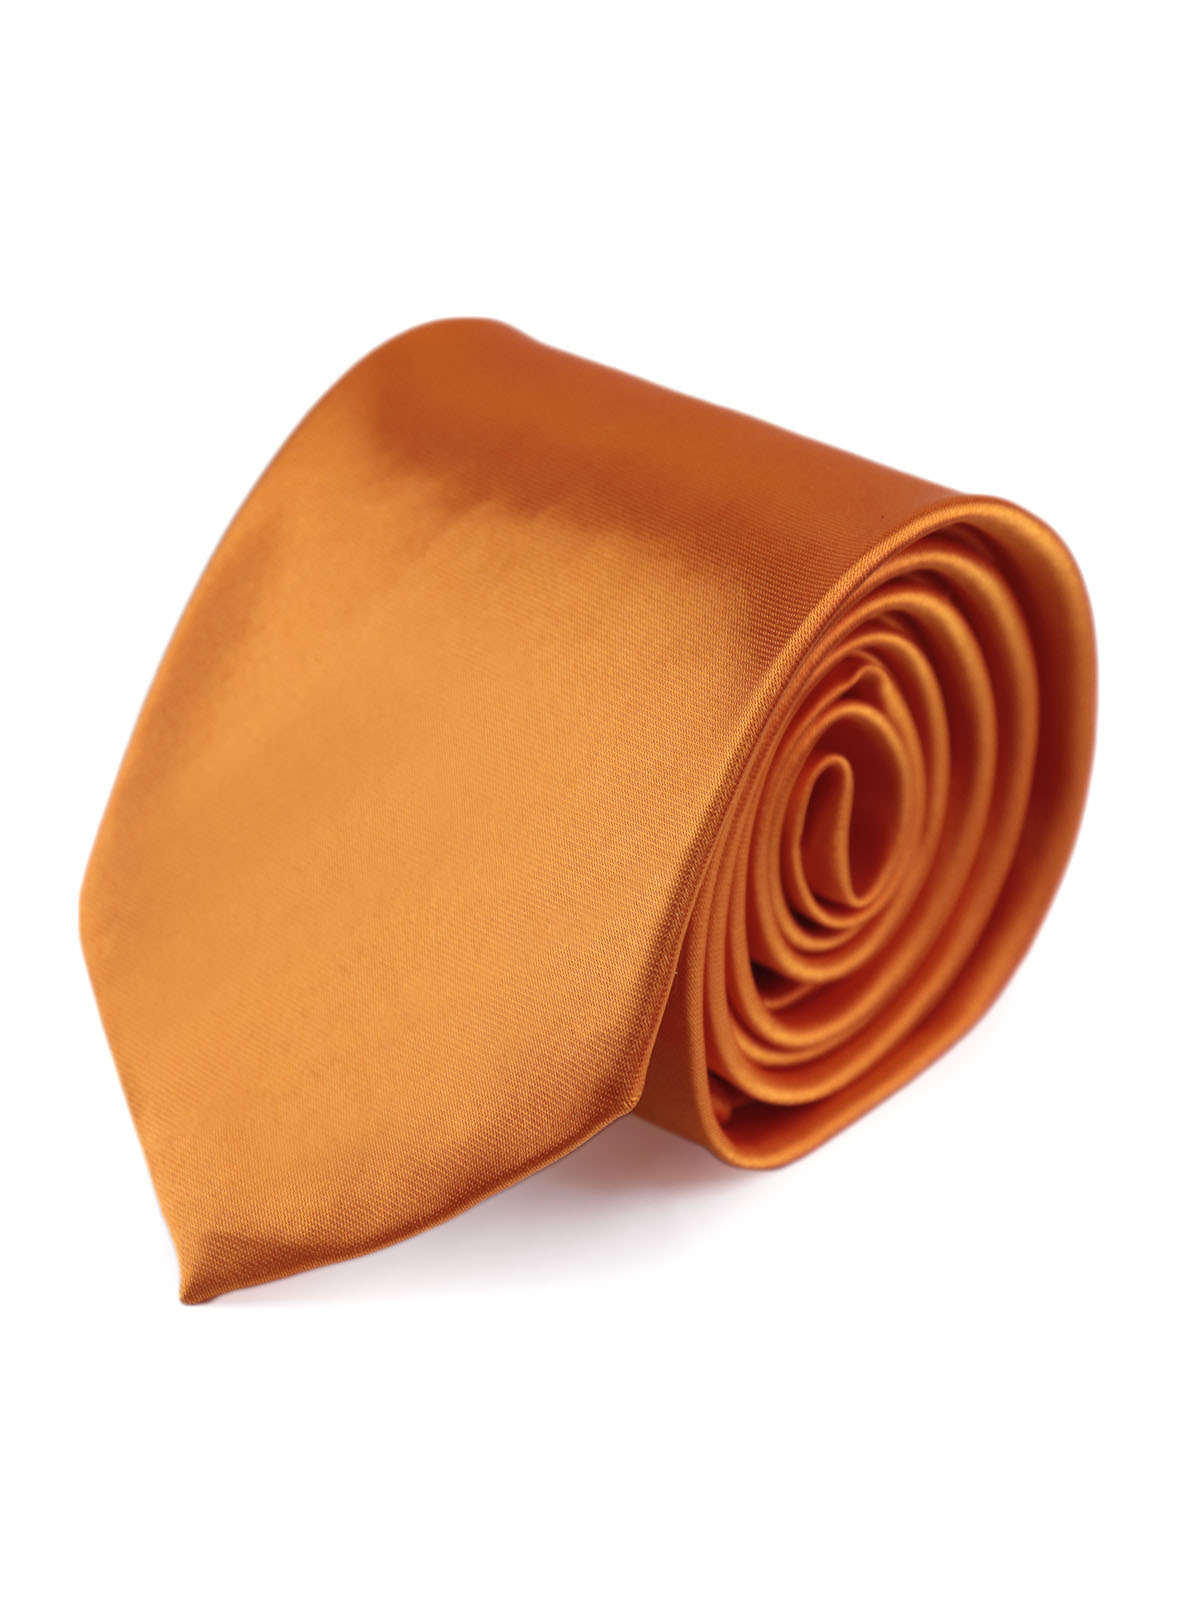 Галстук атласный широкий оранжевый описание: Фасон - Классический, Материал - Полиэстер, Цвет - Оранжевый, Размер - 8,5 см. х 150 см., Страна производства - Турция.